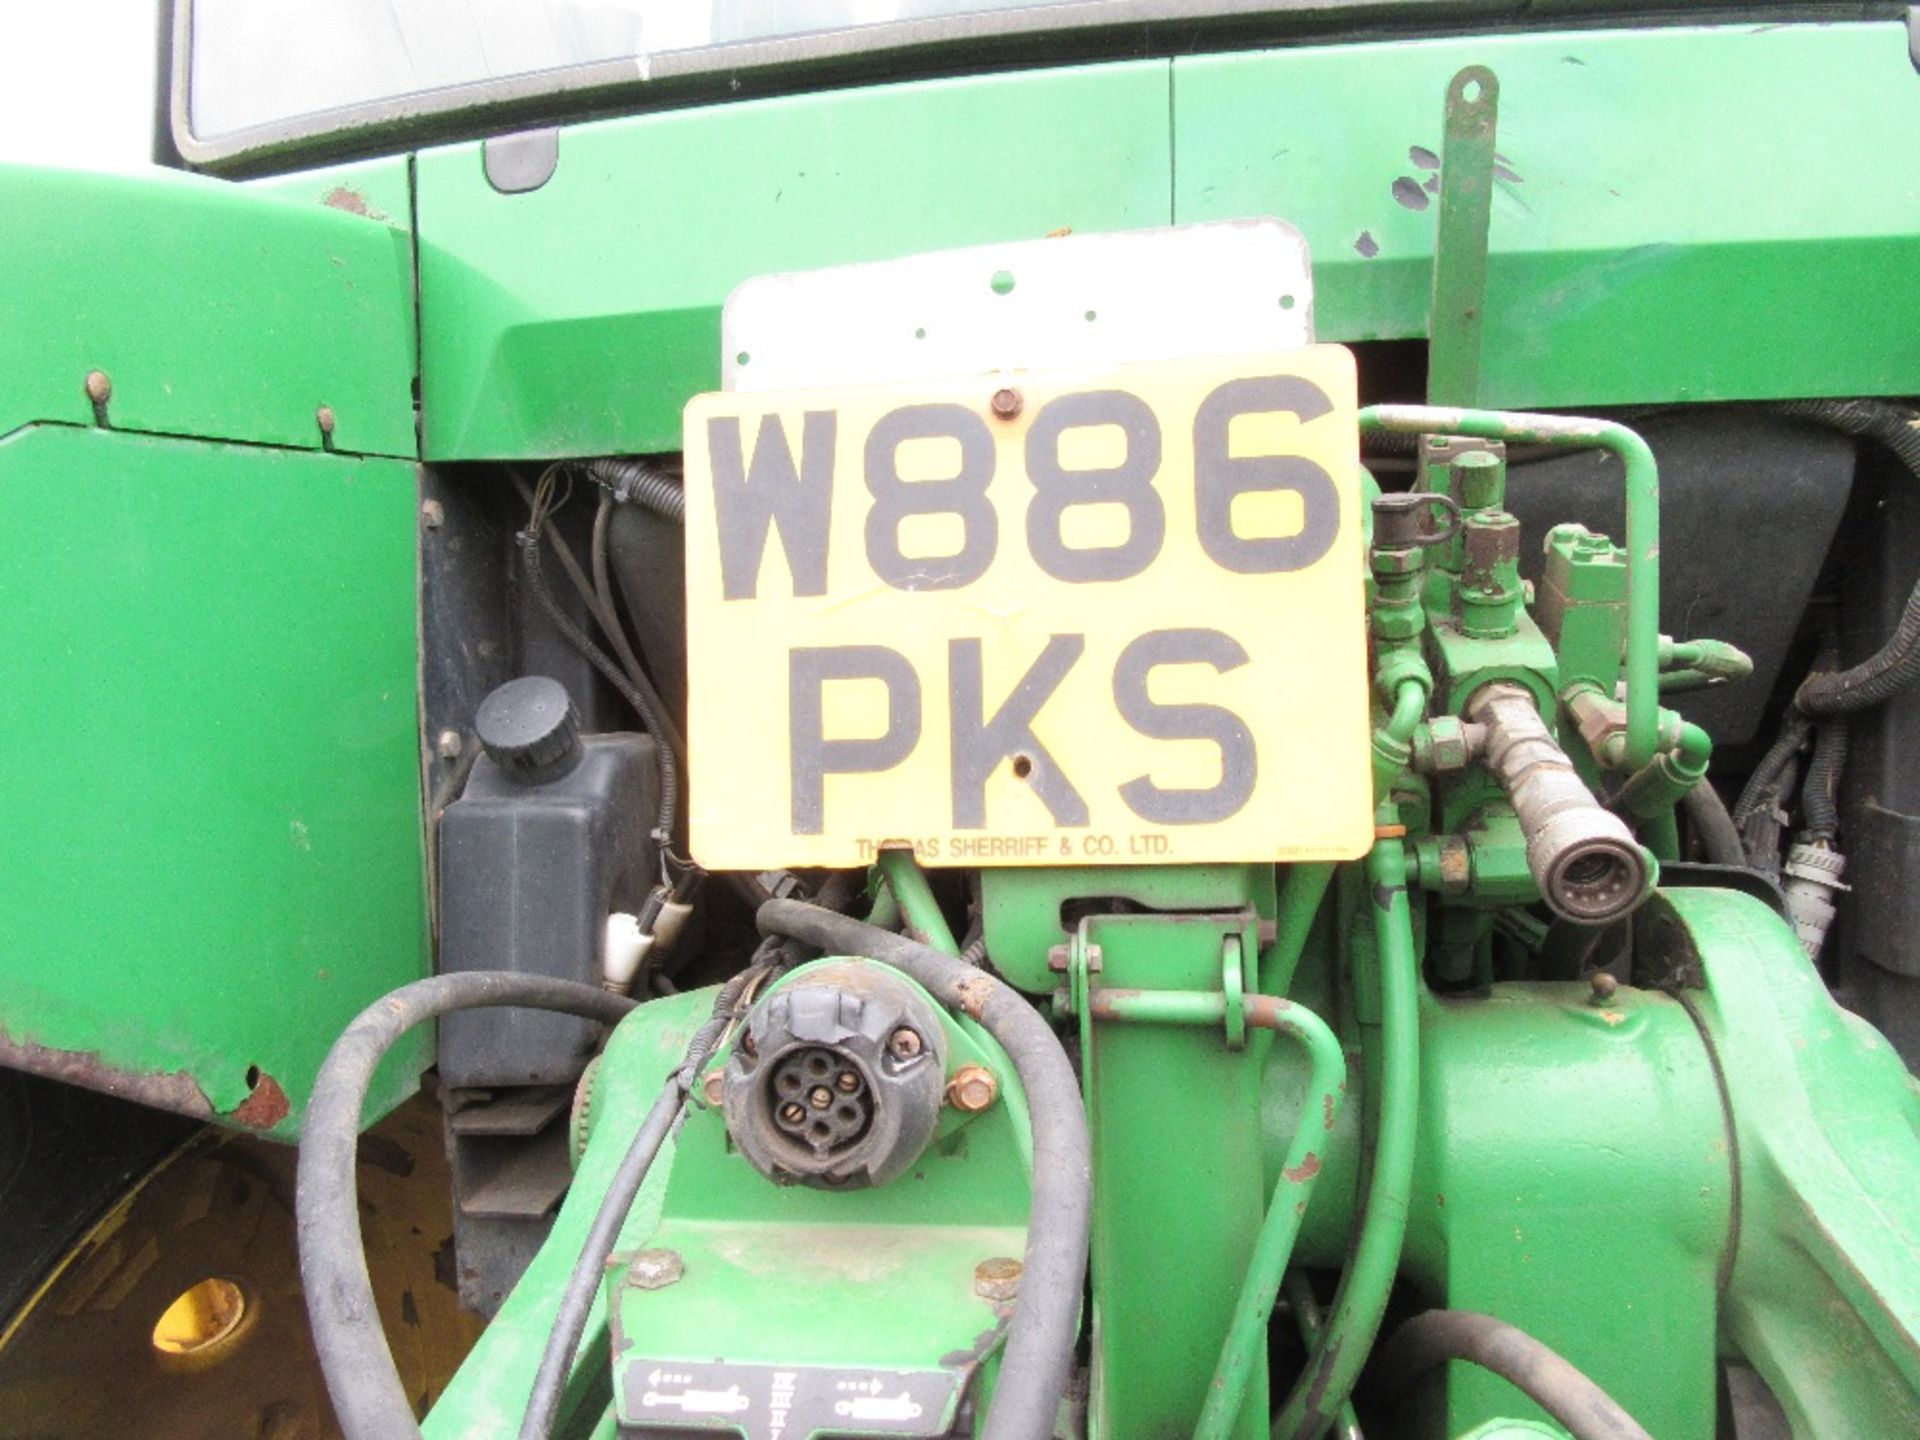 John Deere 7710 Tractor. Reg.No. W886 PKS - Image 15 of 22